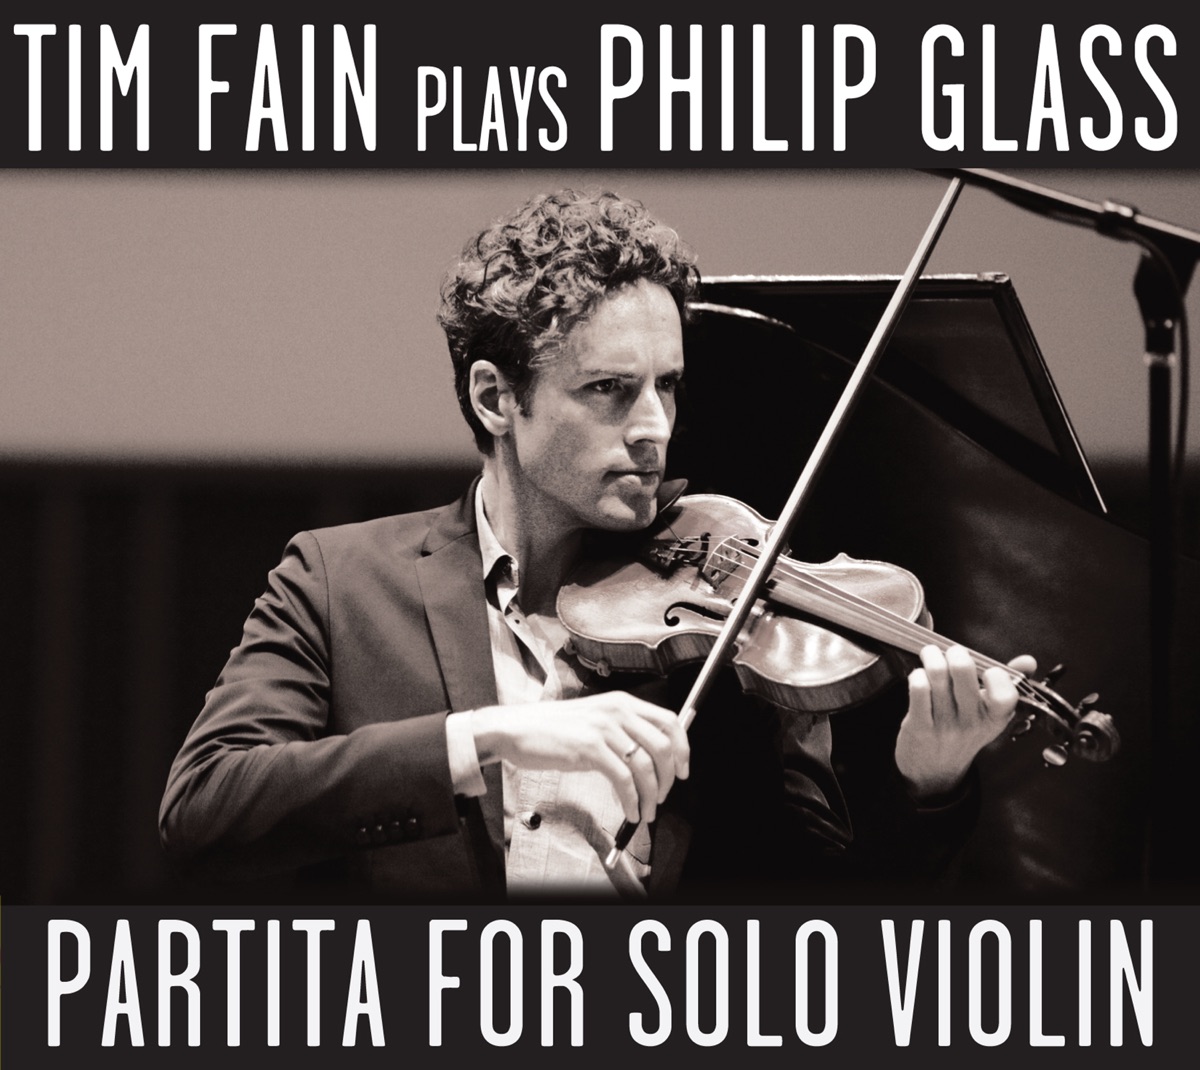 Philip Glass: Partita for Solo Violin (Tim Fain Plays Philip Glass) – Album  par Tim Fain – Apple Music